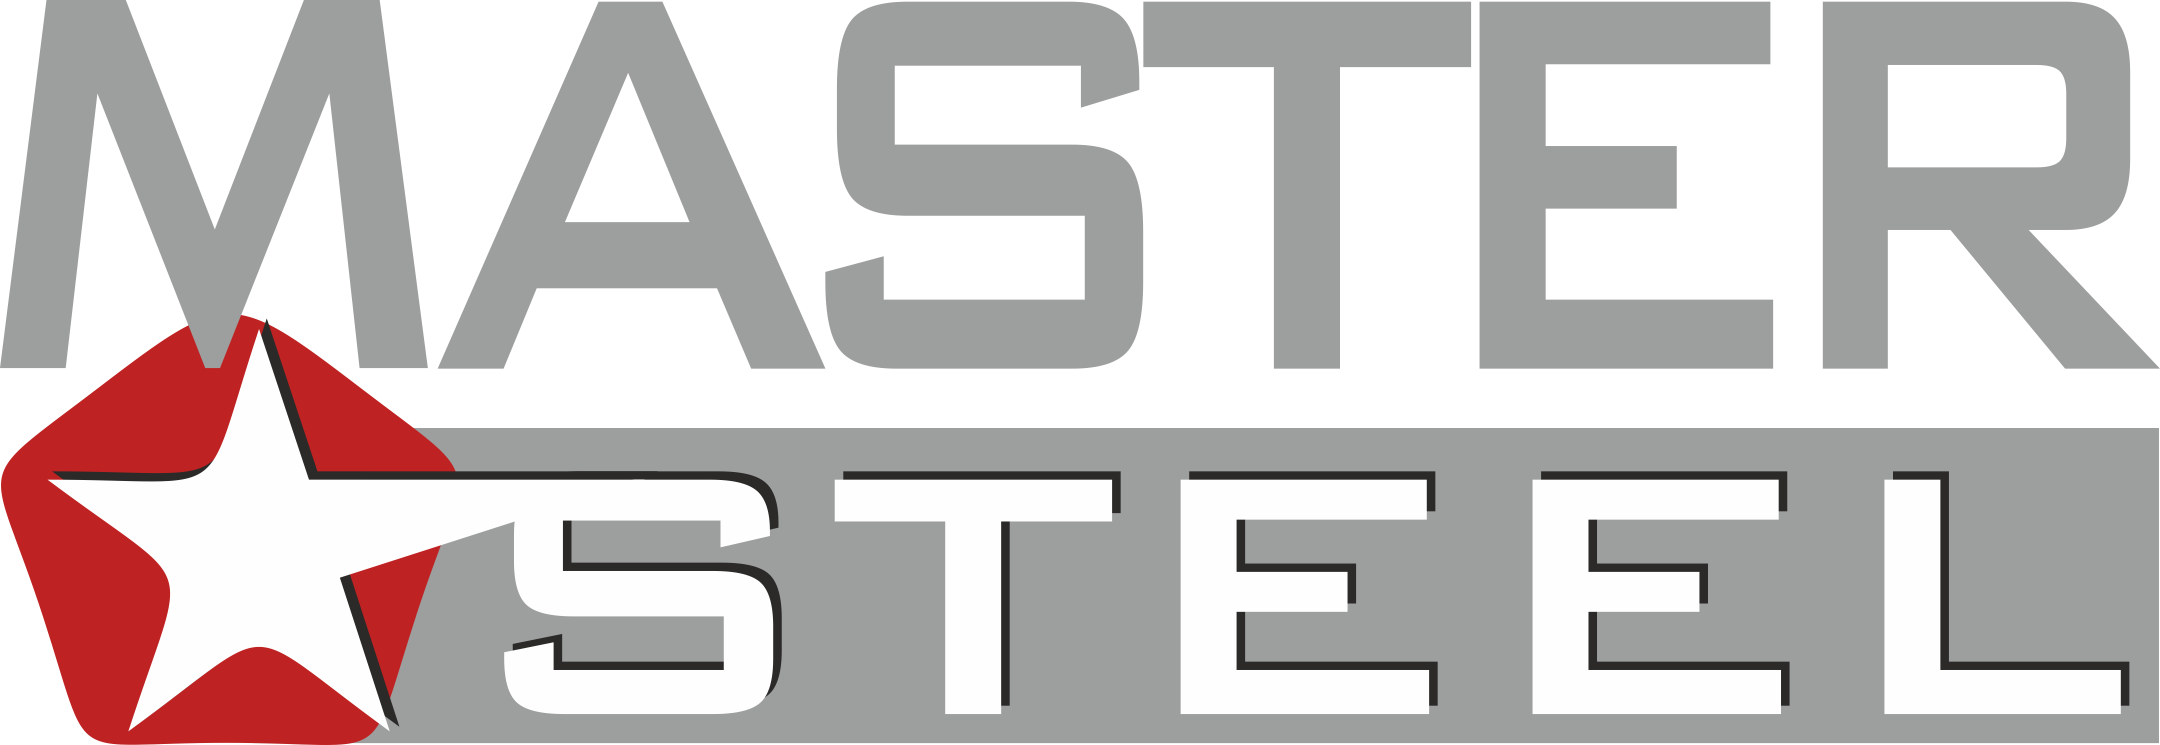 ООО Мастерс. Steel Master качество в деталях. Сталь-мастер производитель. Steel Master logo. Master steel